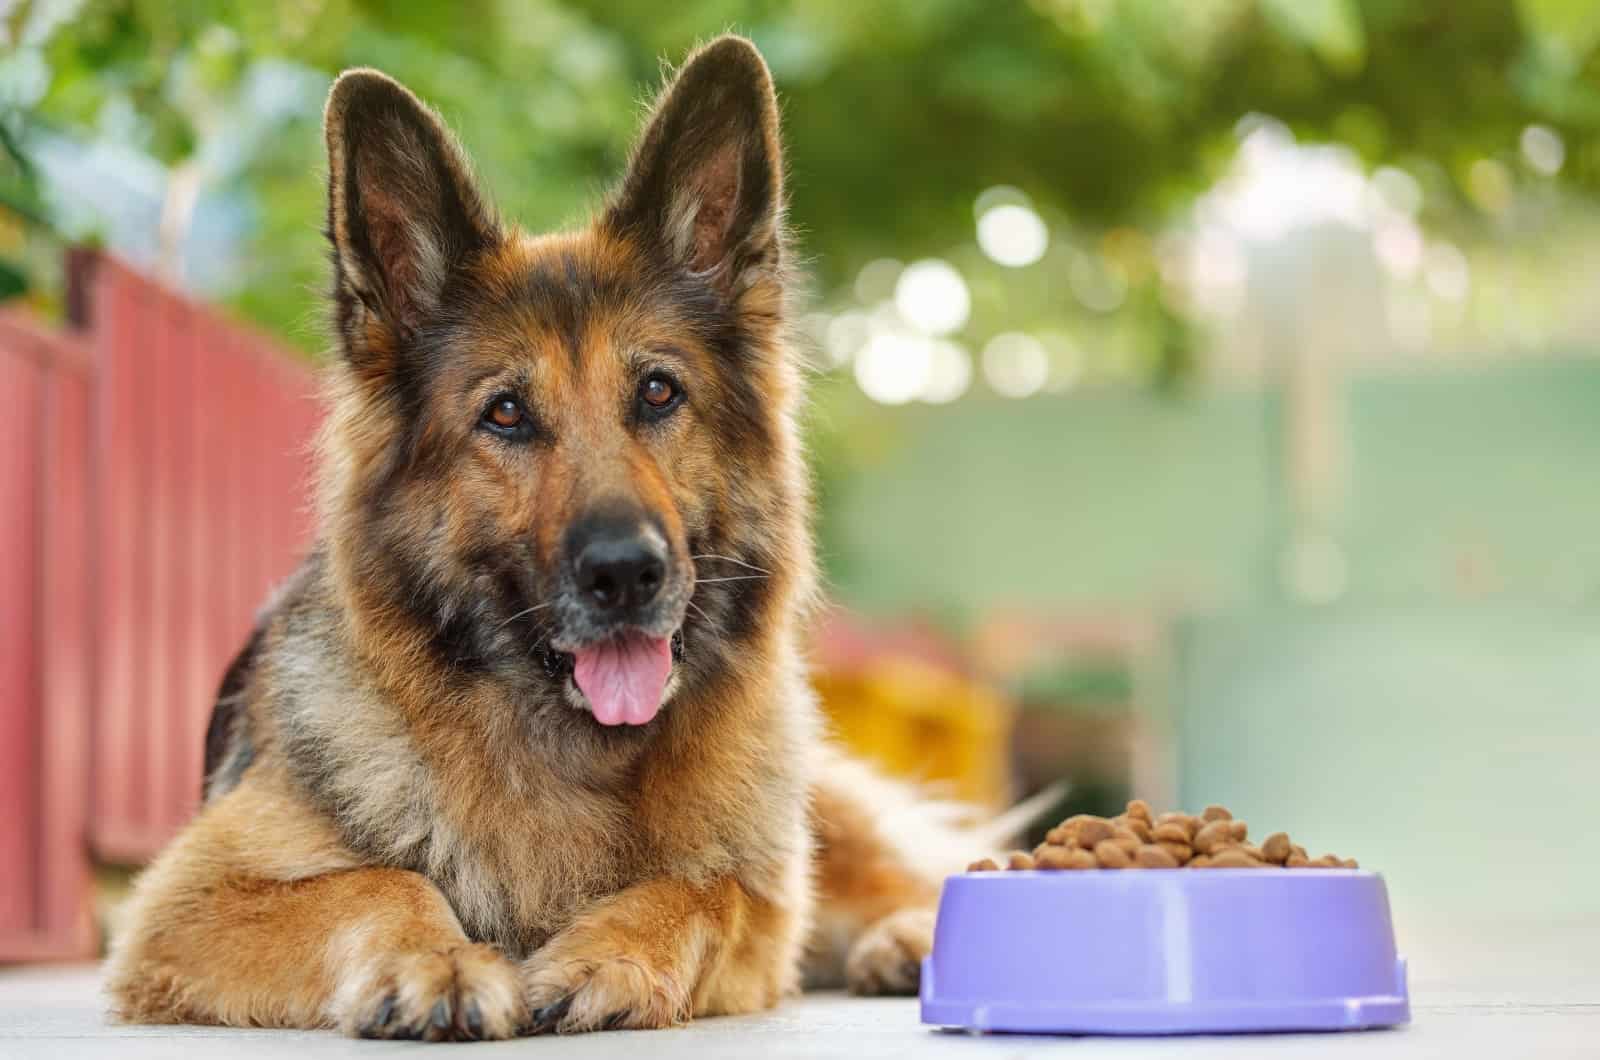 German Shepherd sitting by food